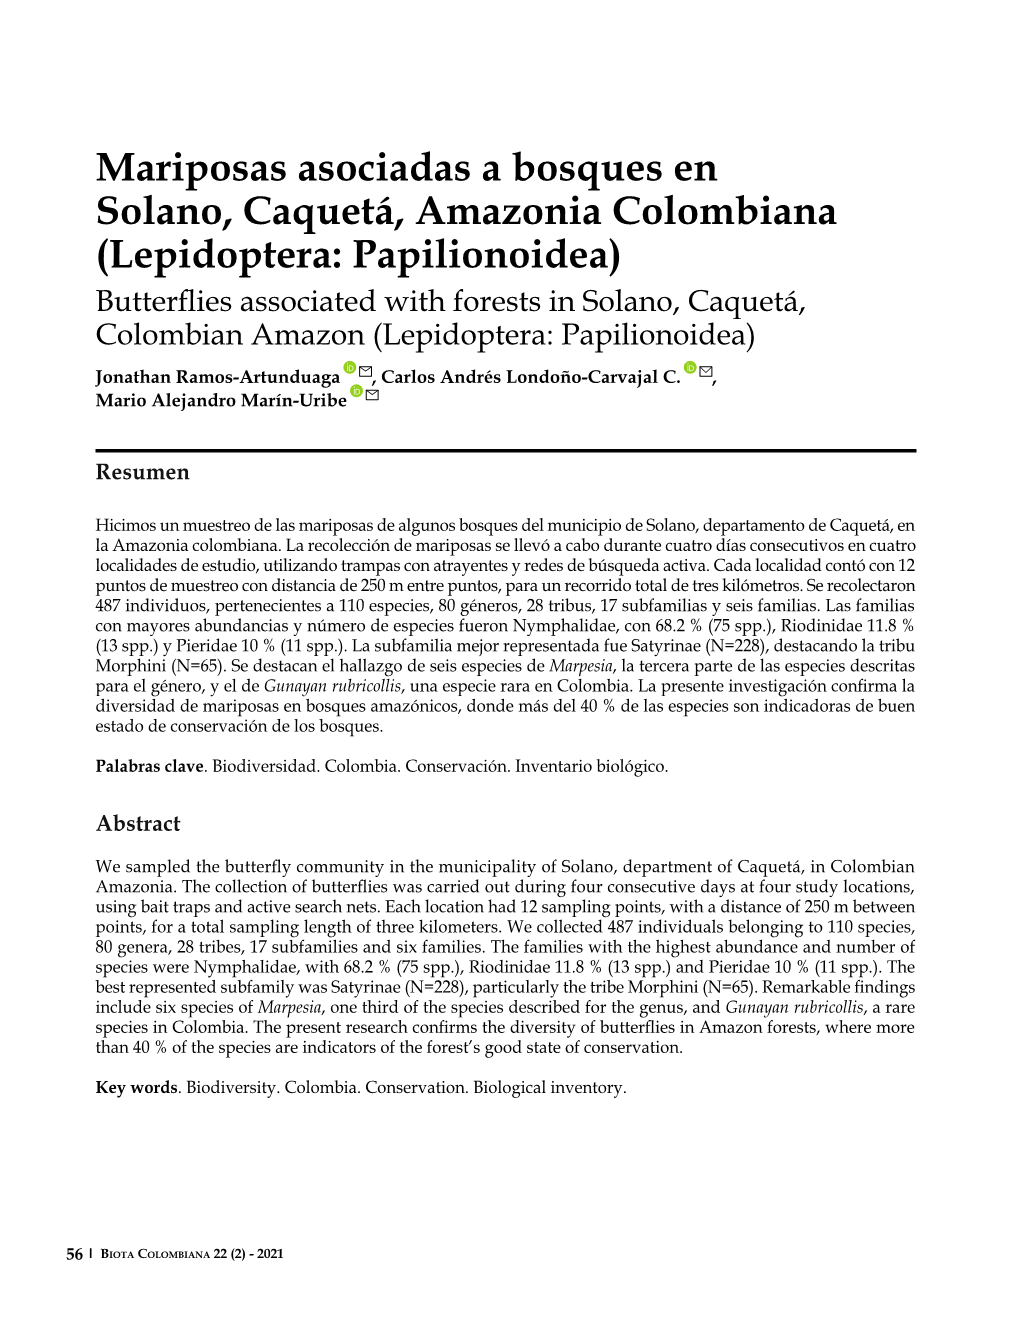 Mariposas Asociadas a Bosques En Solano, Caquetá, Amazonia Colombiana (Lepidoptera: Papilionoidea)